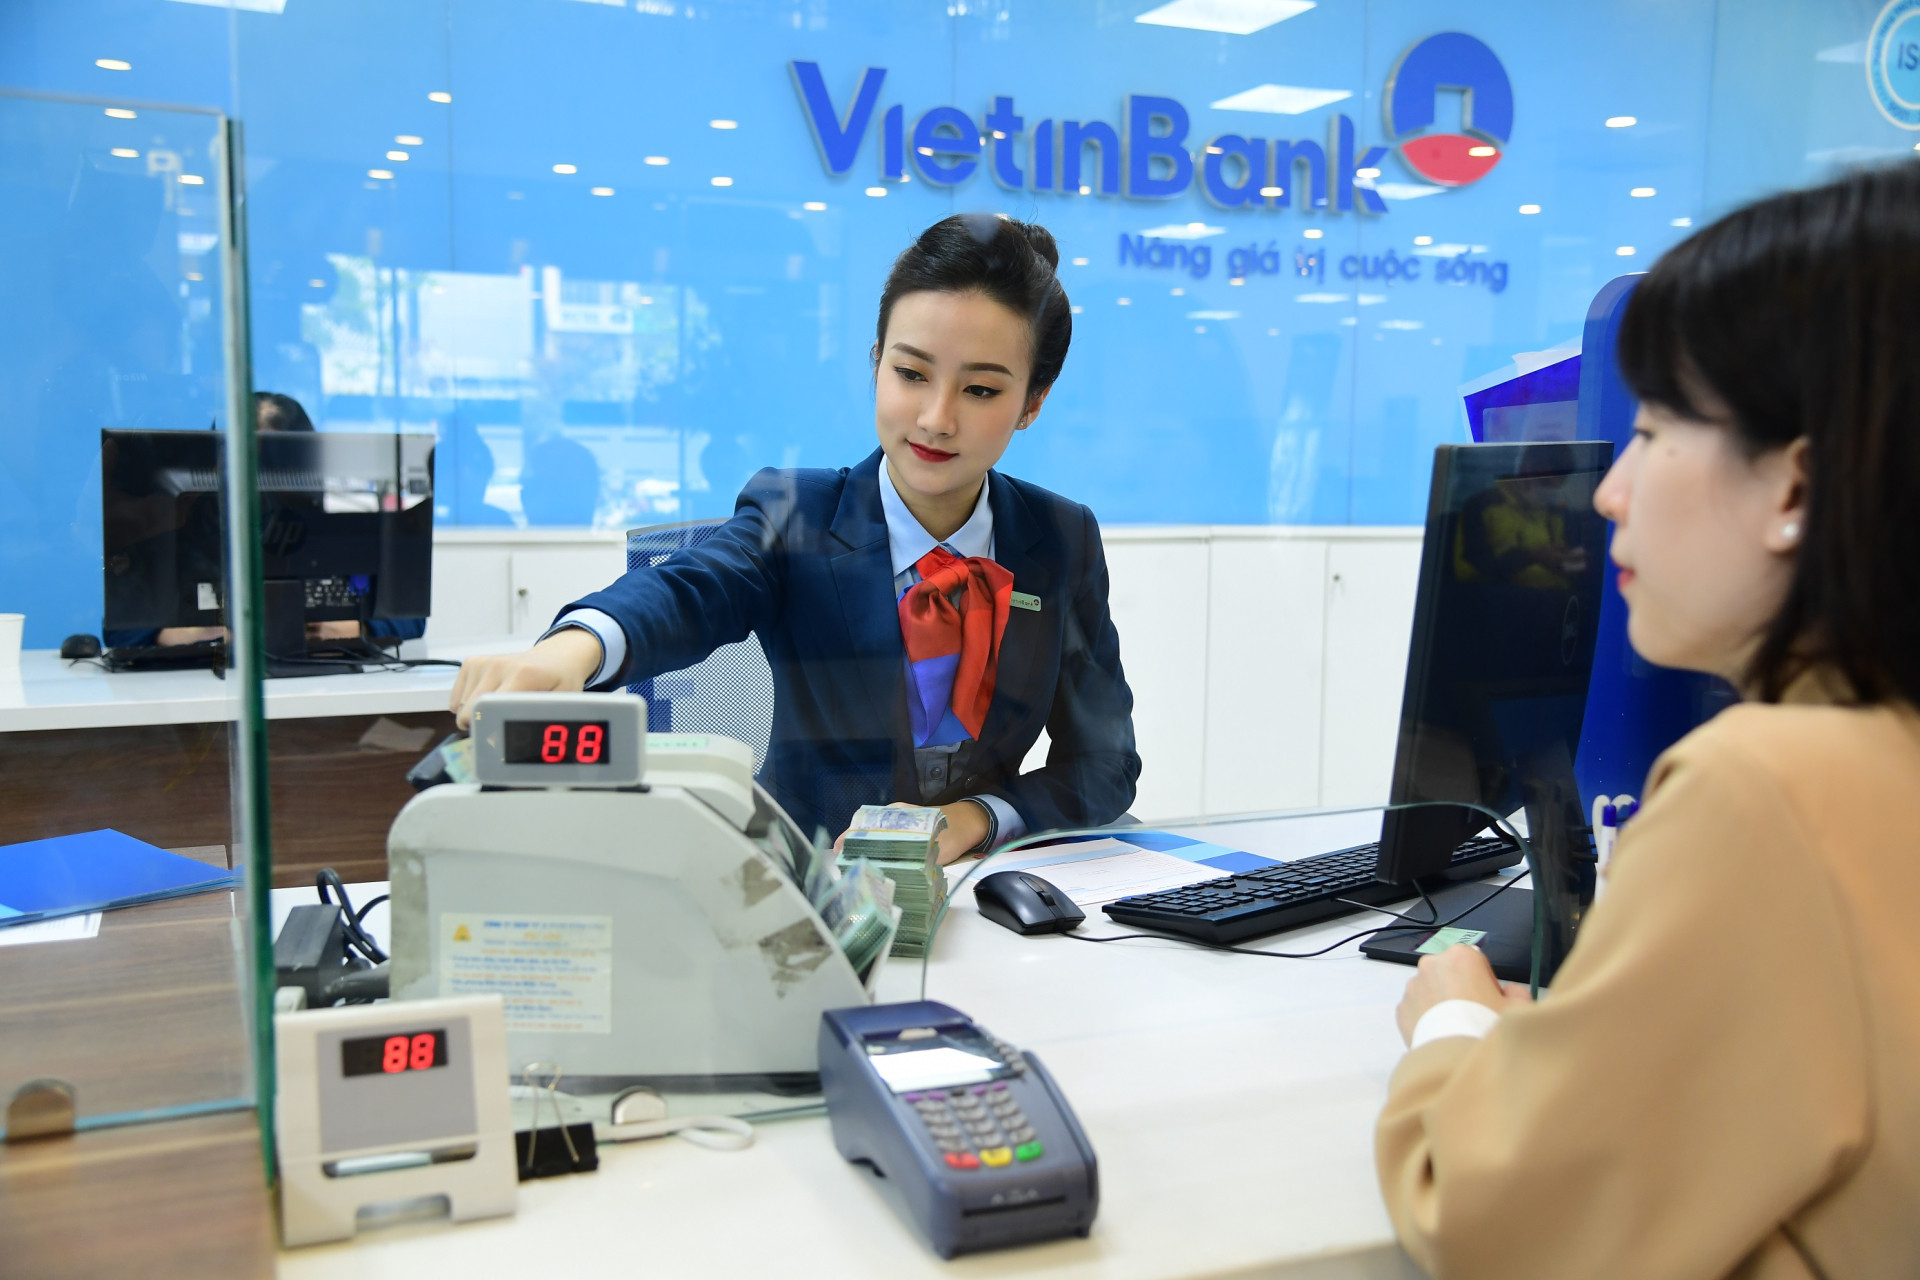 Với kỳ từ 12 tháng trở lên, VietinBank áp dụng mức lãi suất mới 6,4%/năm, cao hơn 0,8%/năm so với trước.